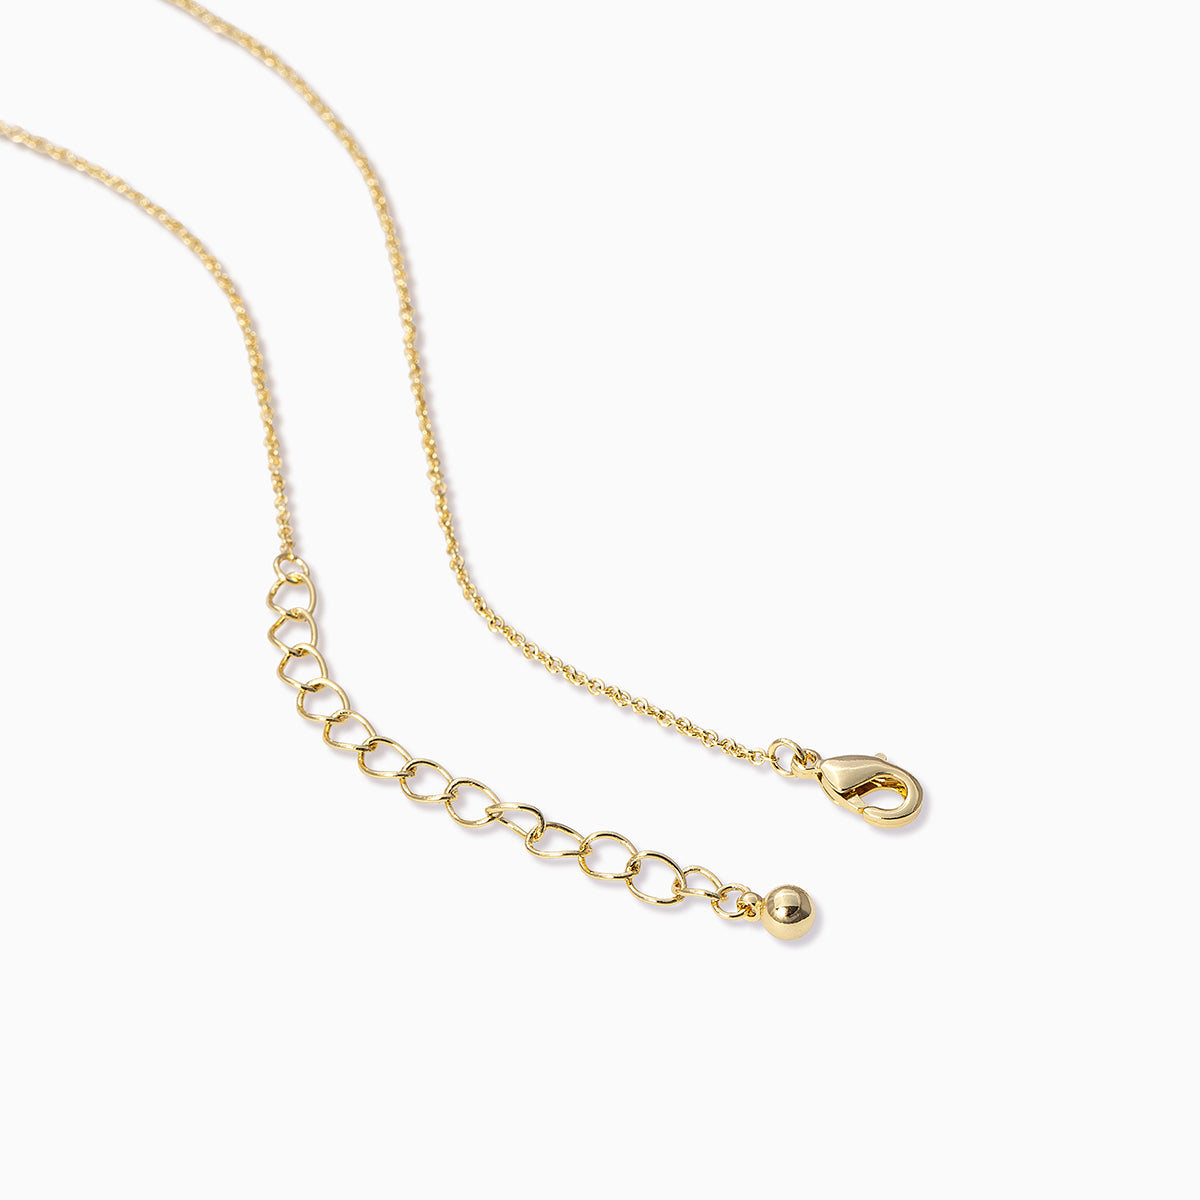 Uniform Necklace | Gold | Product Detail Image 2 | Uncommon James